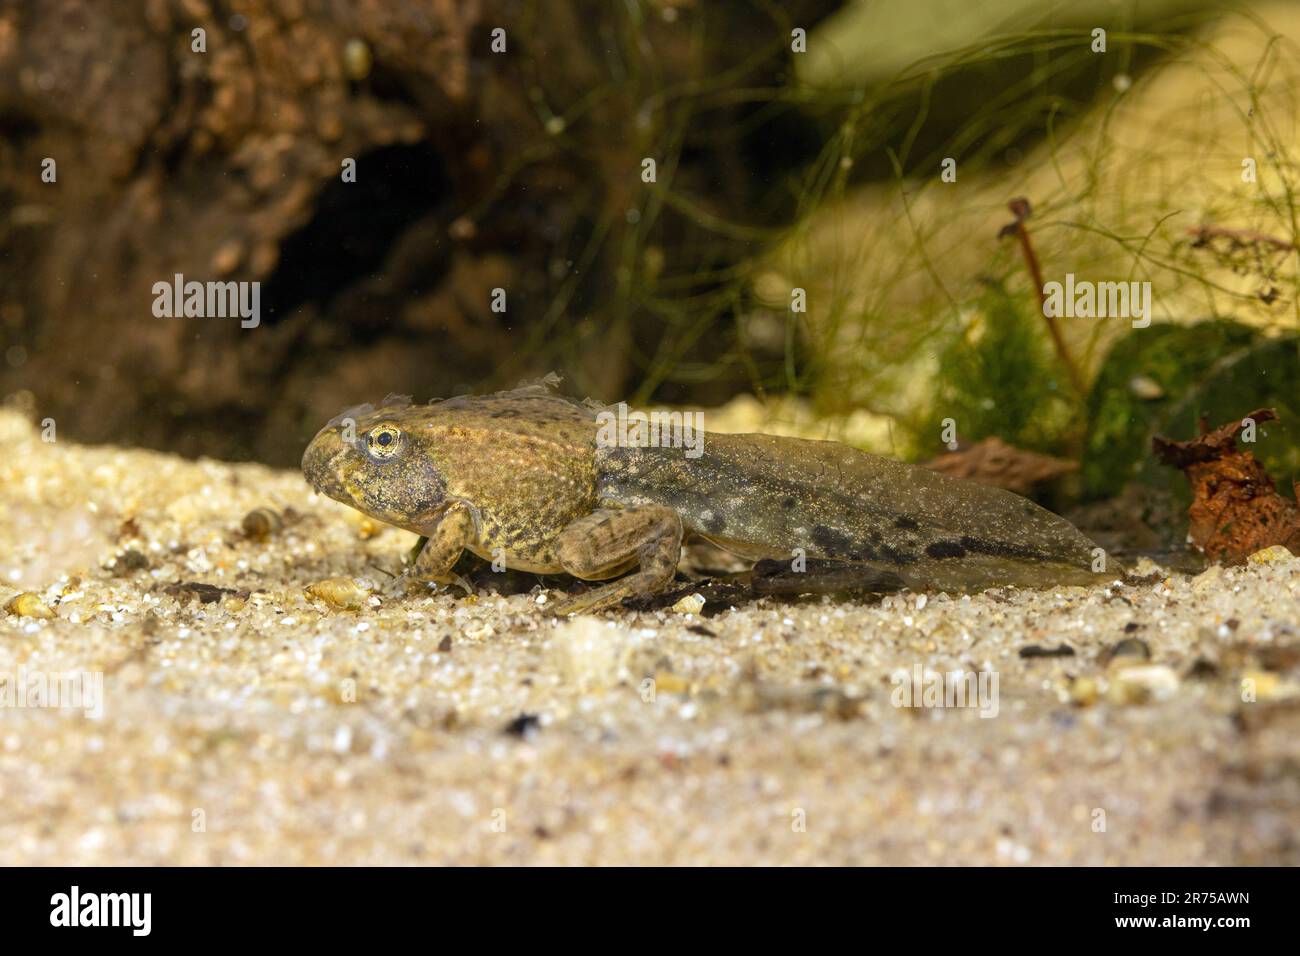 marsh frog, lake frog (Rana ridibunda, Pelophylax ridibundus), four-legged tadpole with remains of skin, side view, Germany, Bavaria Stock Photo